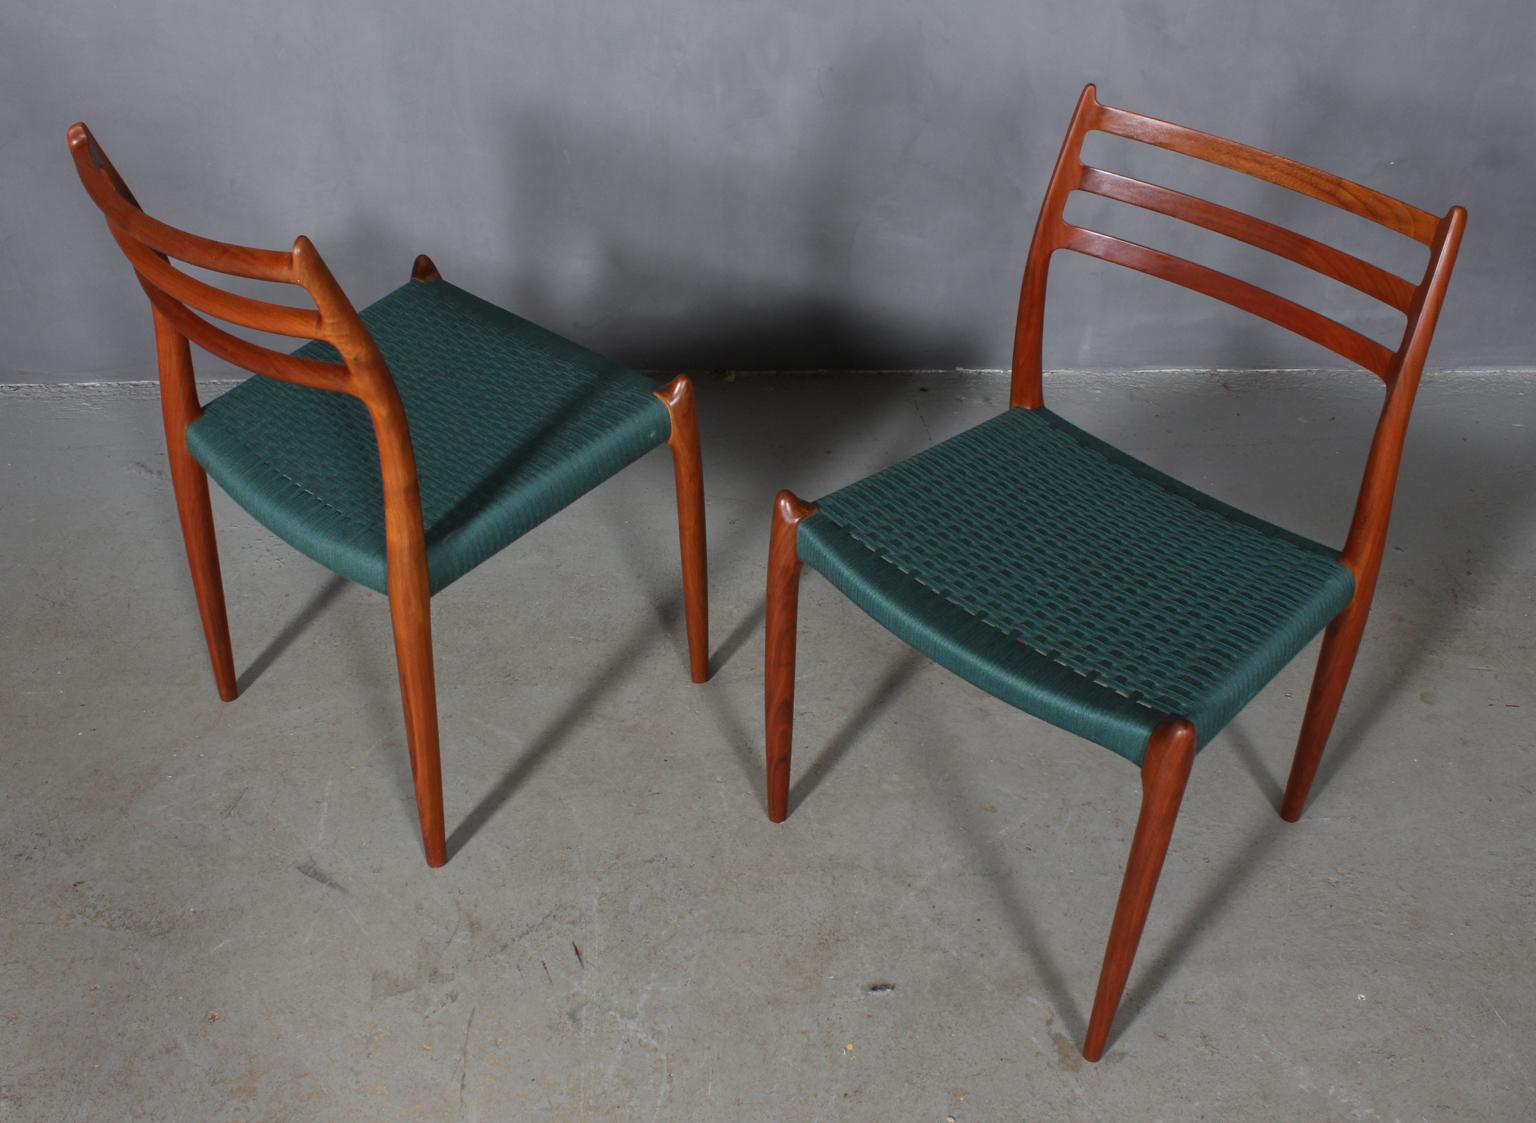 N. O. Møller side chair with frame of solid oiled teak.

Seat weaved.

Model 78, Made by J. L. Møller, Denmark, 1960s.